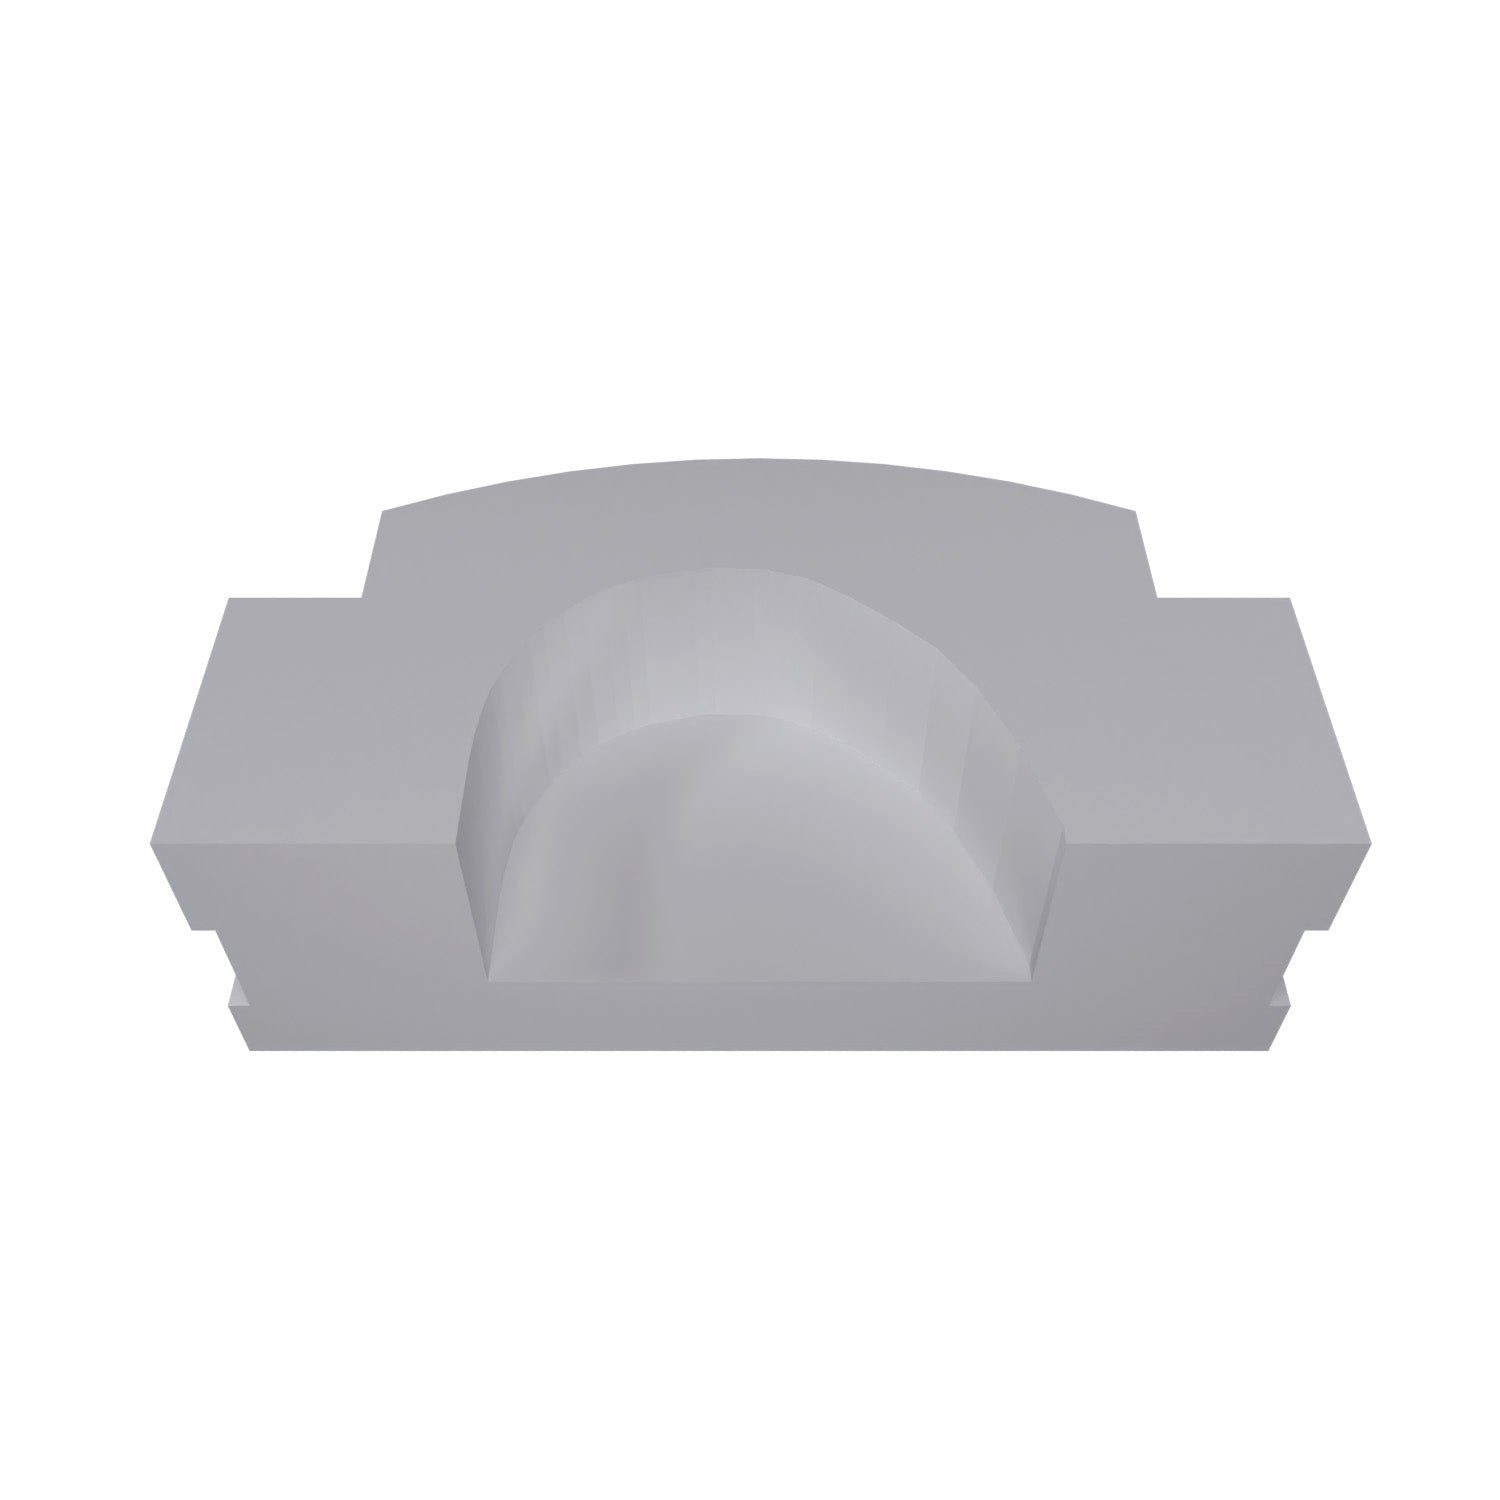 für MEA Kipplager Verschluss Kippfenster Ersa Mealon kompatibel fossi3D Fensterbeschlag Weiß Kappe